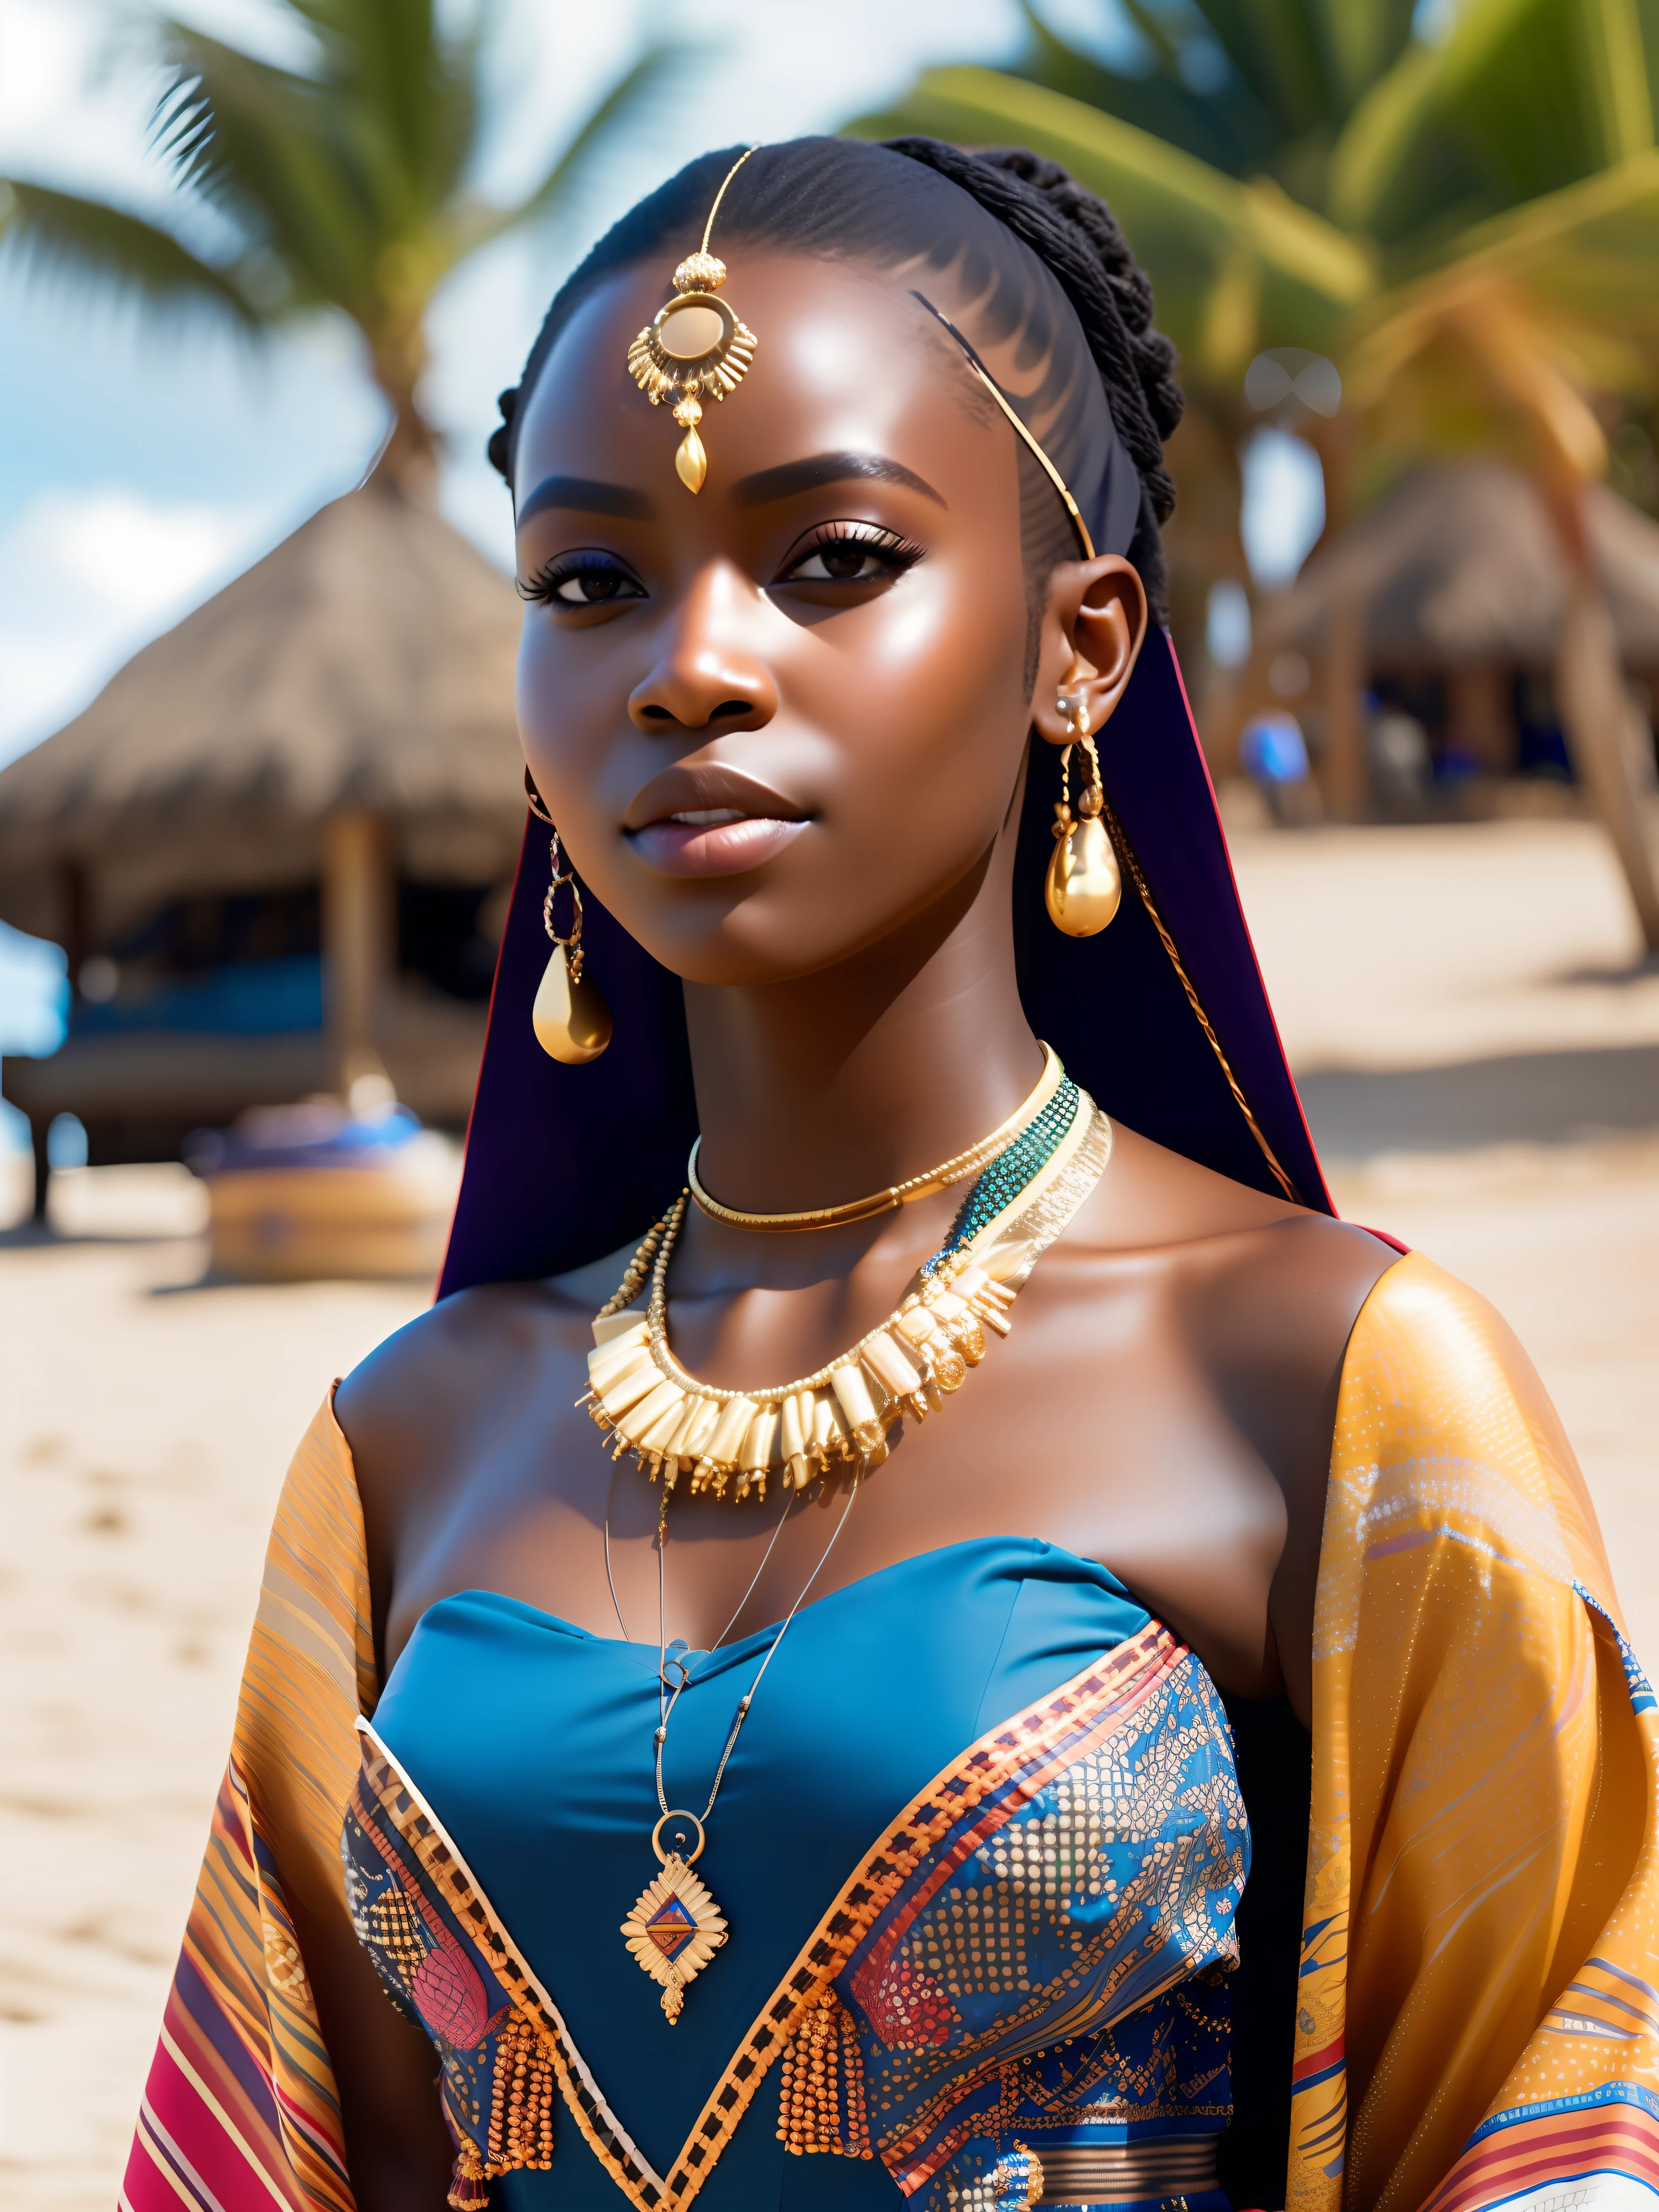 他媽的_科幻, 他媽的_科幻_v2, 海灘前一位非常美麗的年輕非洲女子的肖像, 豐富多彩的衣服, 金非洲珠寶, 特寫, 皇家姿勢和態度. 他媽的_电影_v2. 他媽的_电影_v2